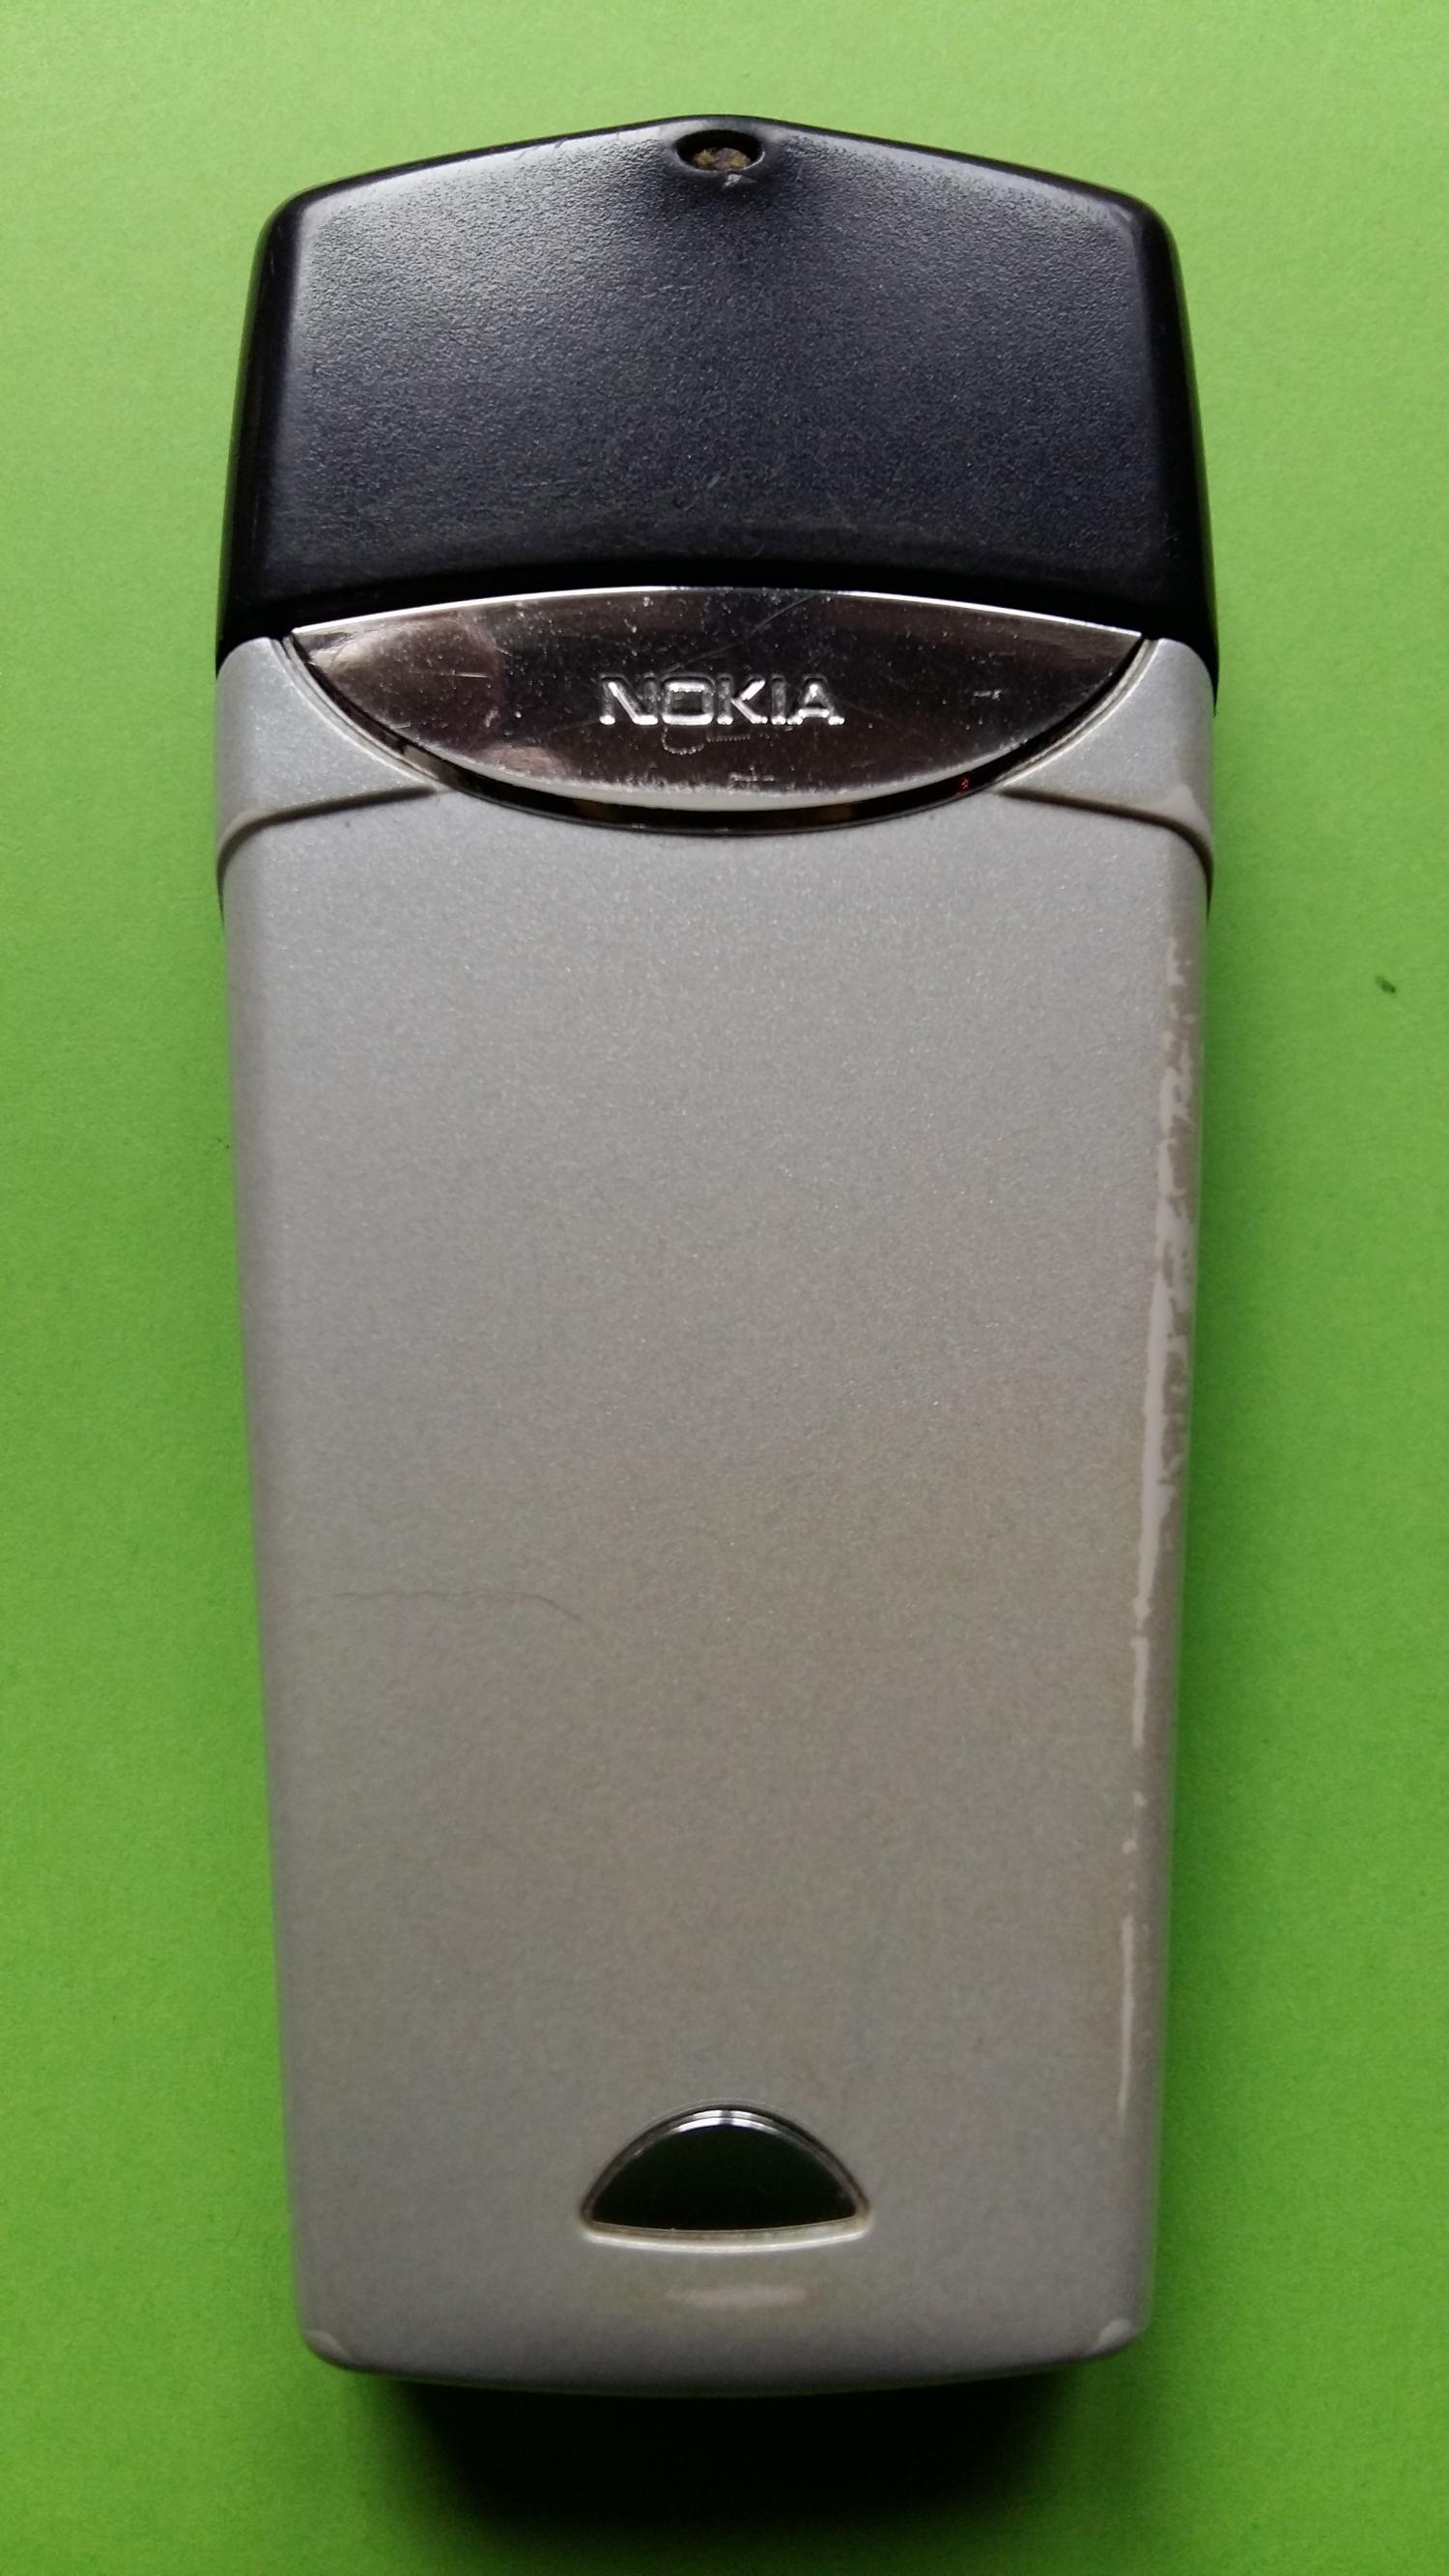 image-7325022-Nokia 8310 (15)2.jpg